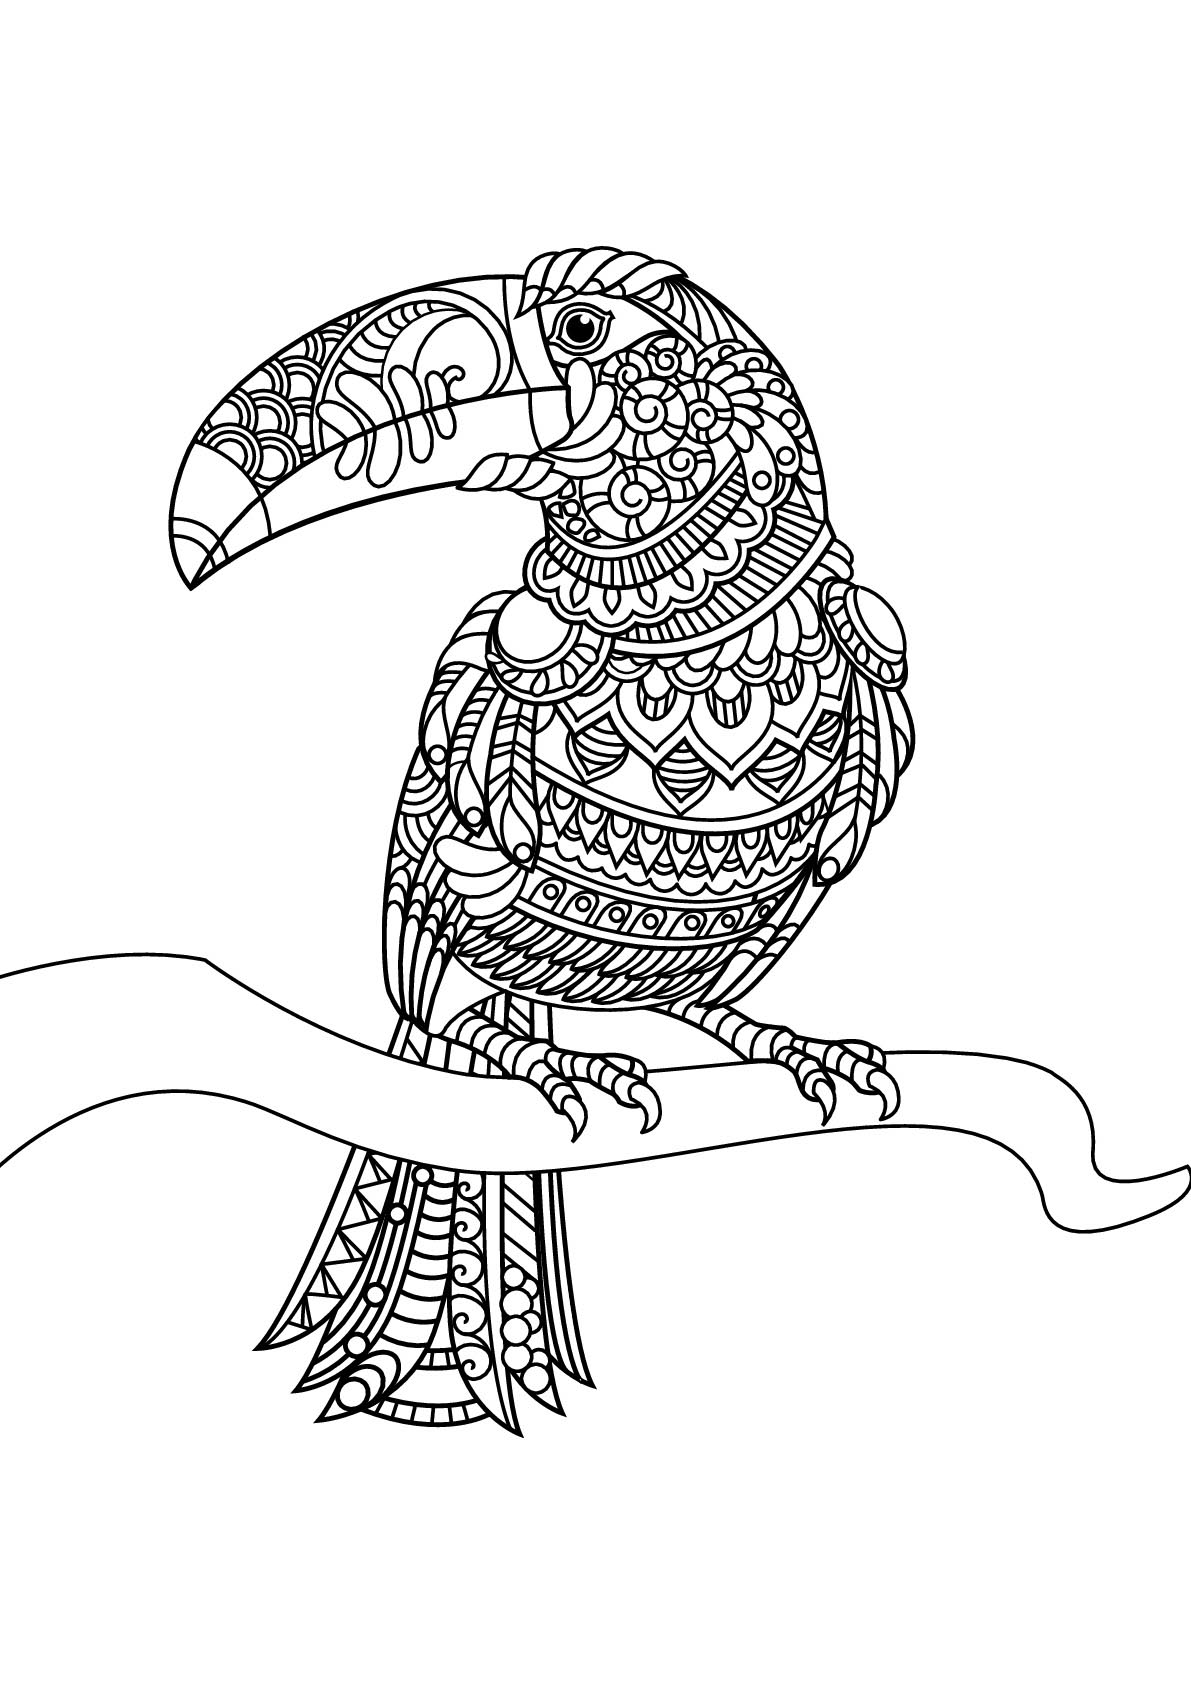 Dibujos para colorear de Pájaros para descargar